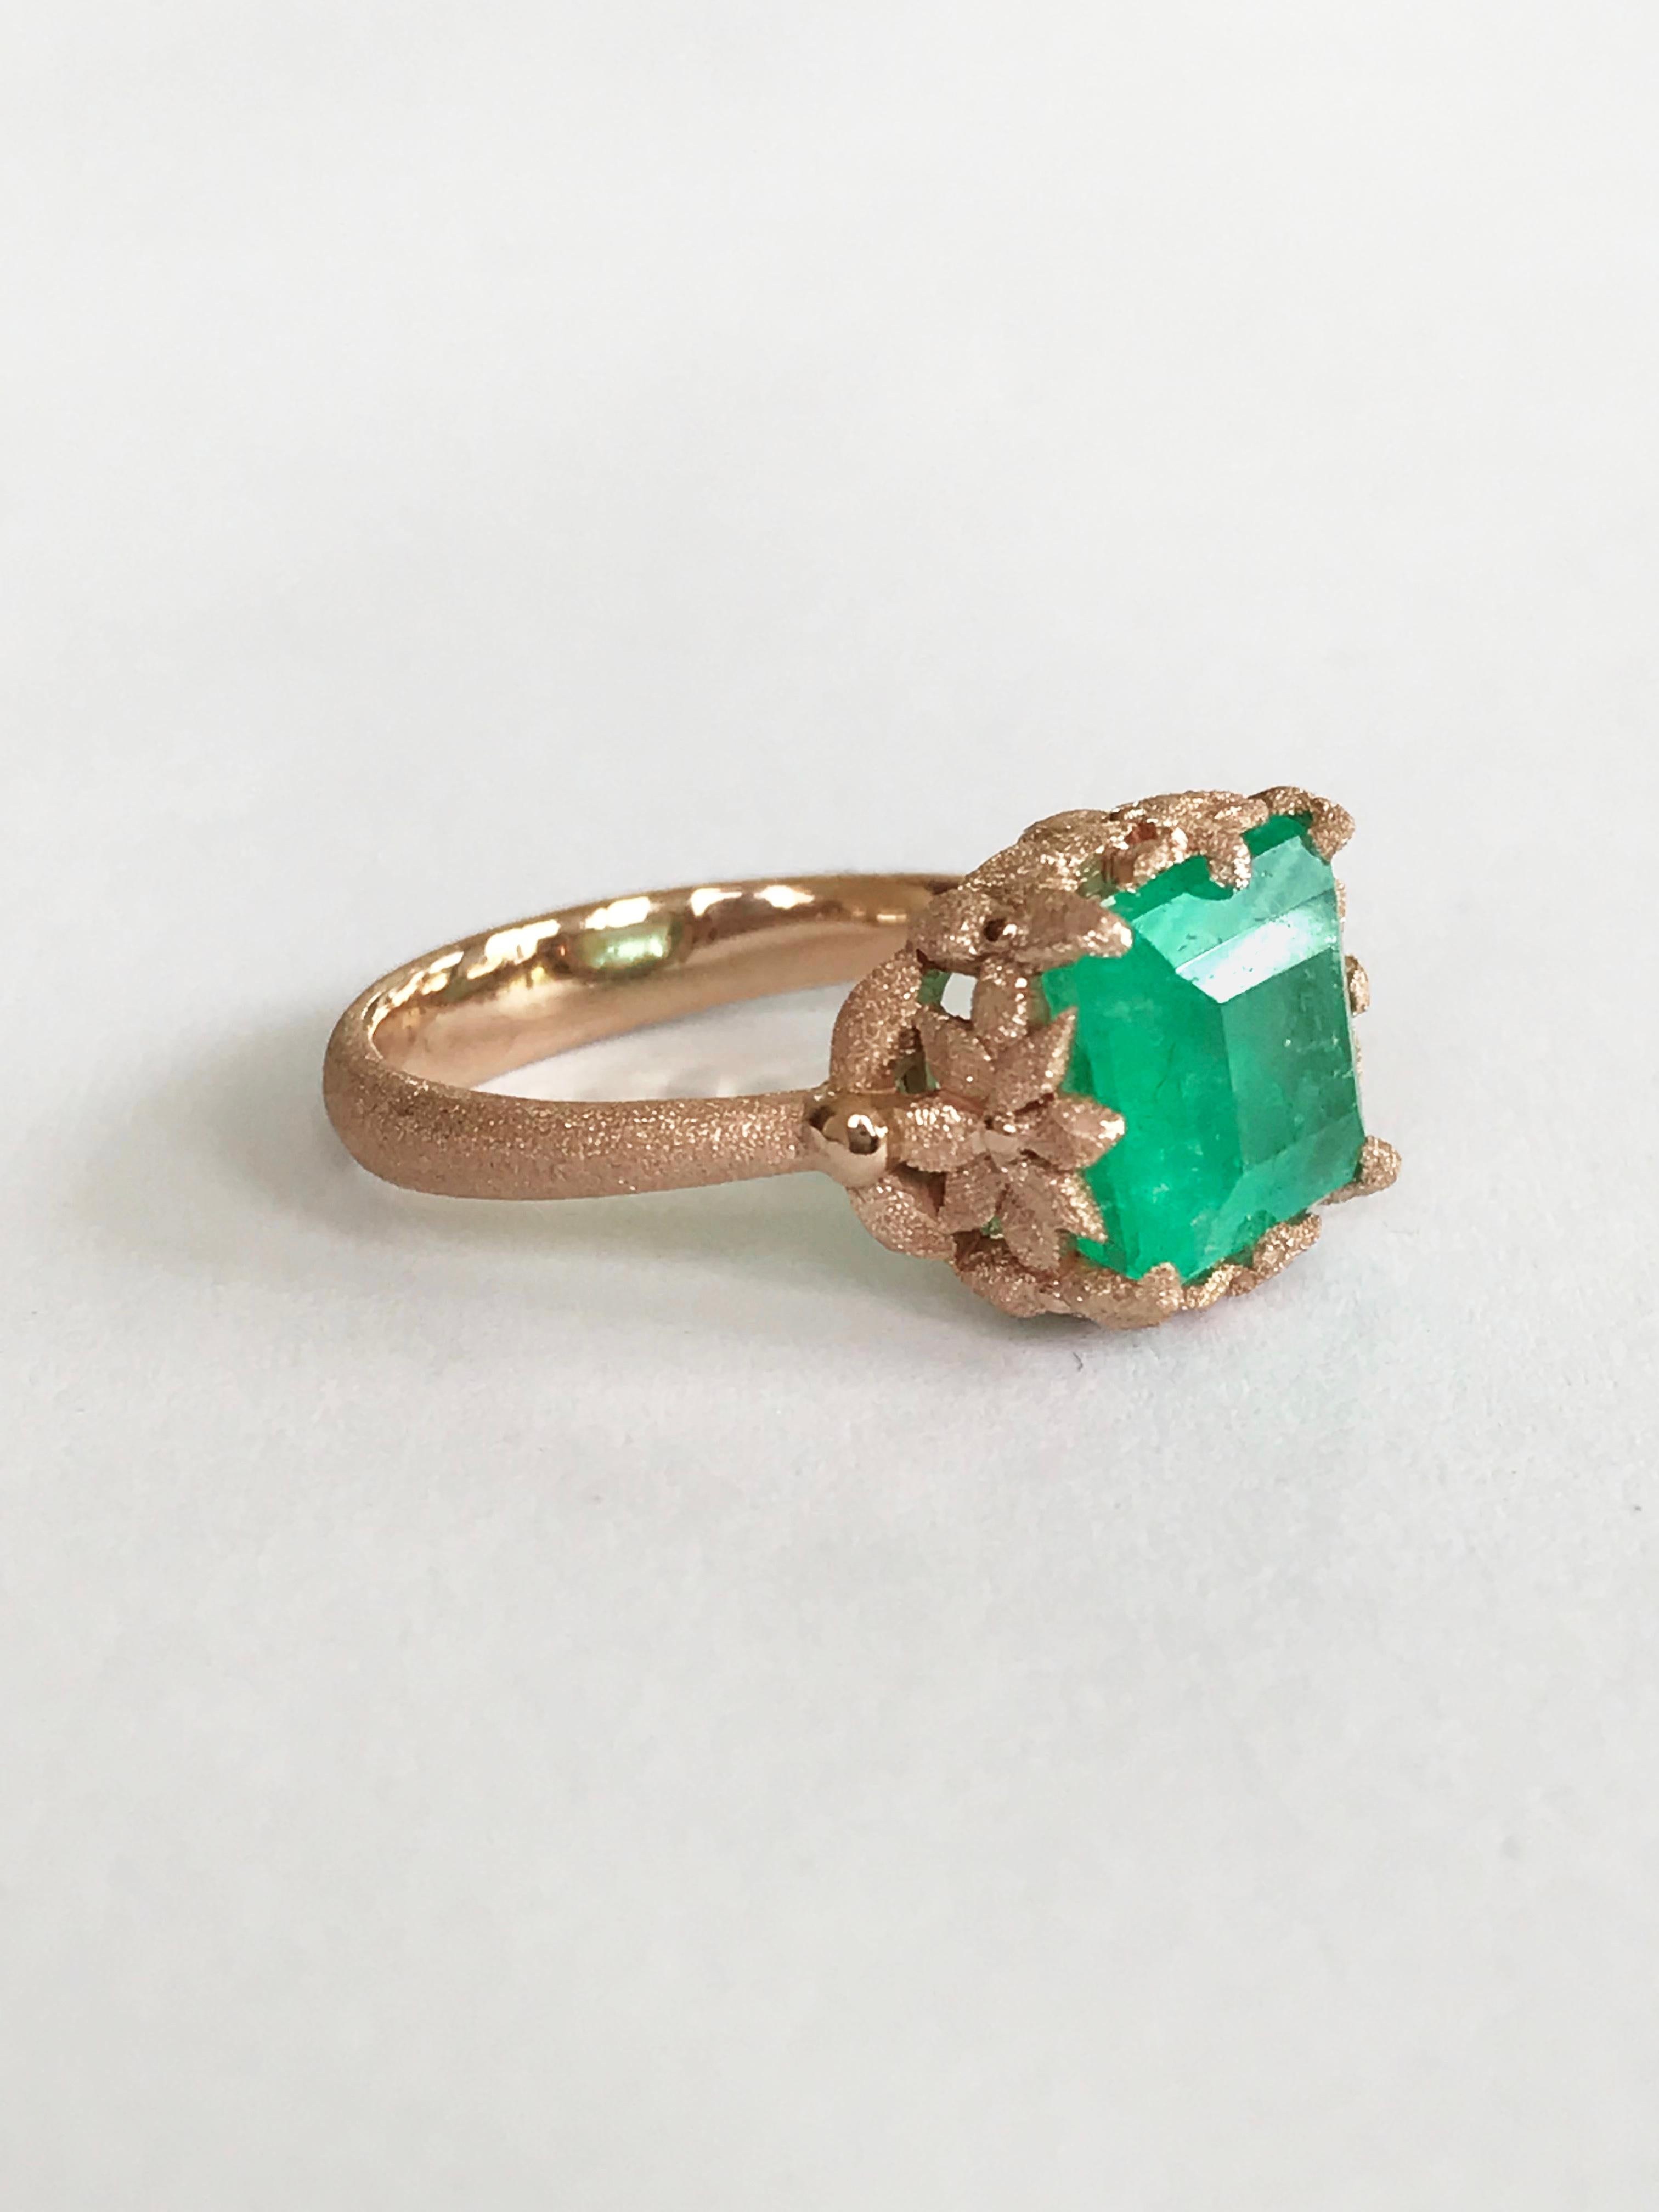 Dalben 3.57 Carat Emerald Cut Emerald Rose Gold Ring For Sale 2